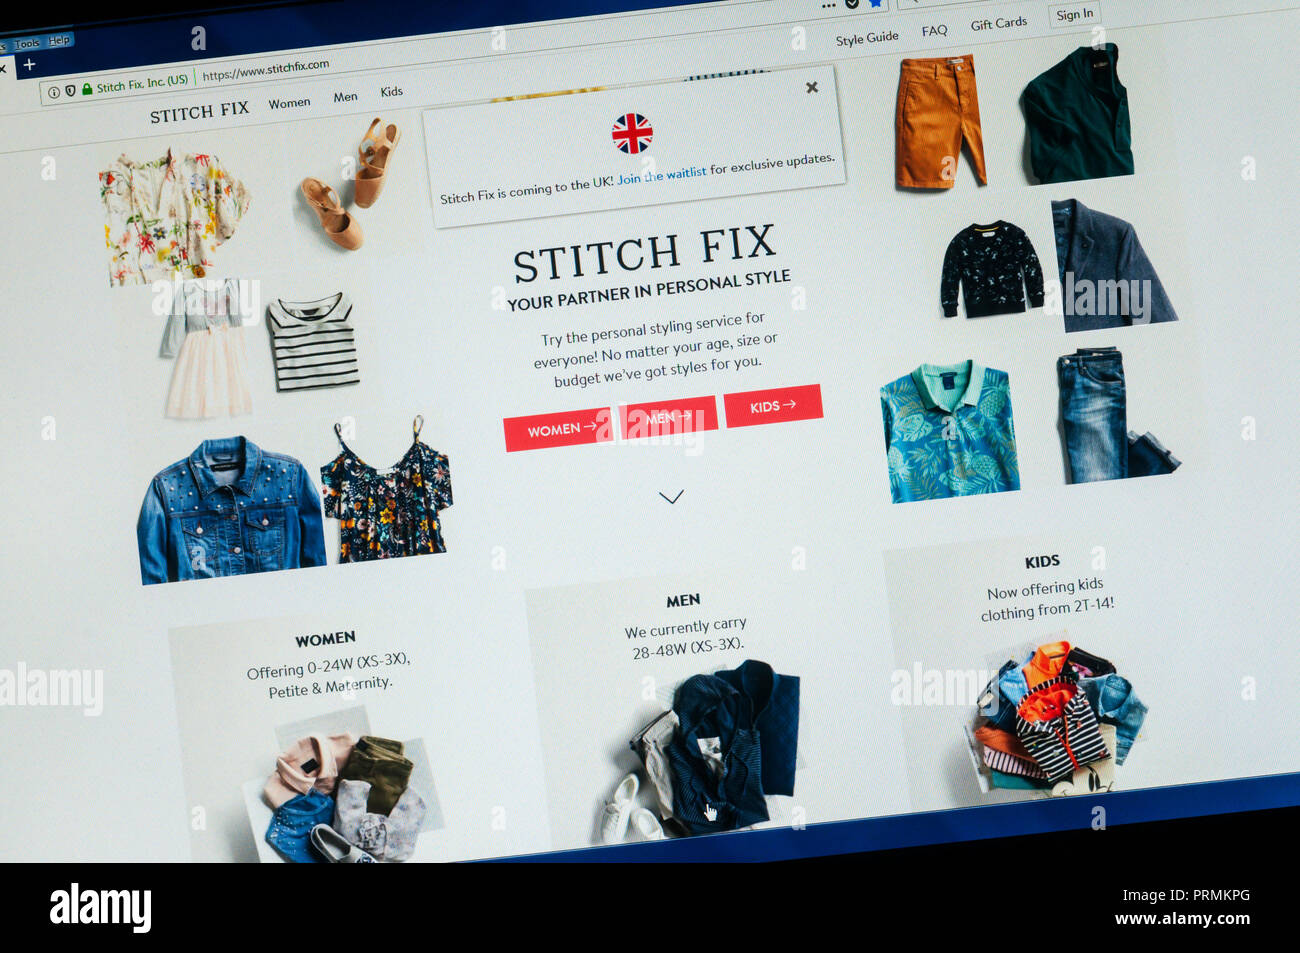 Página de inicio del sitio web de ropa americana Stitch arreglar con ventana anunciando que llega al Reino Unido. Foto de stock